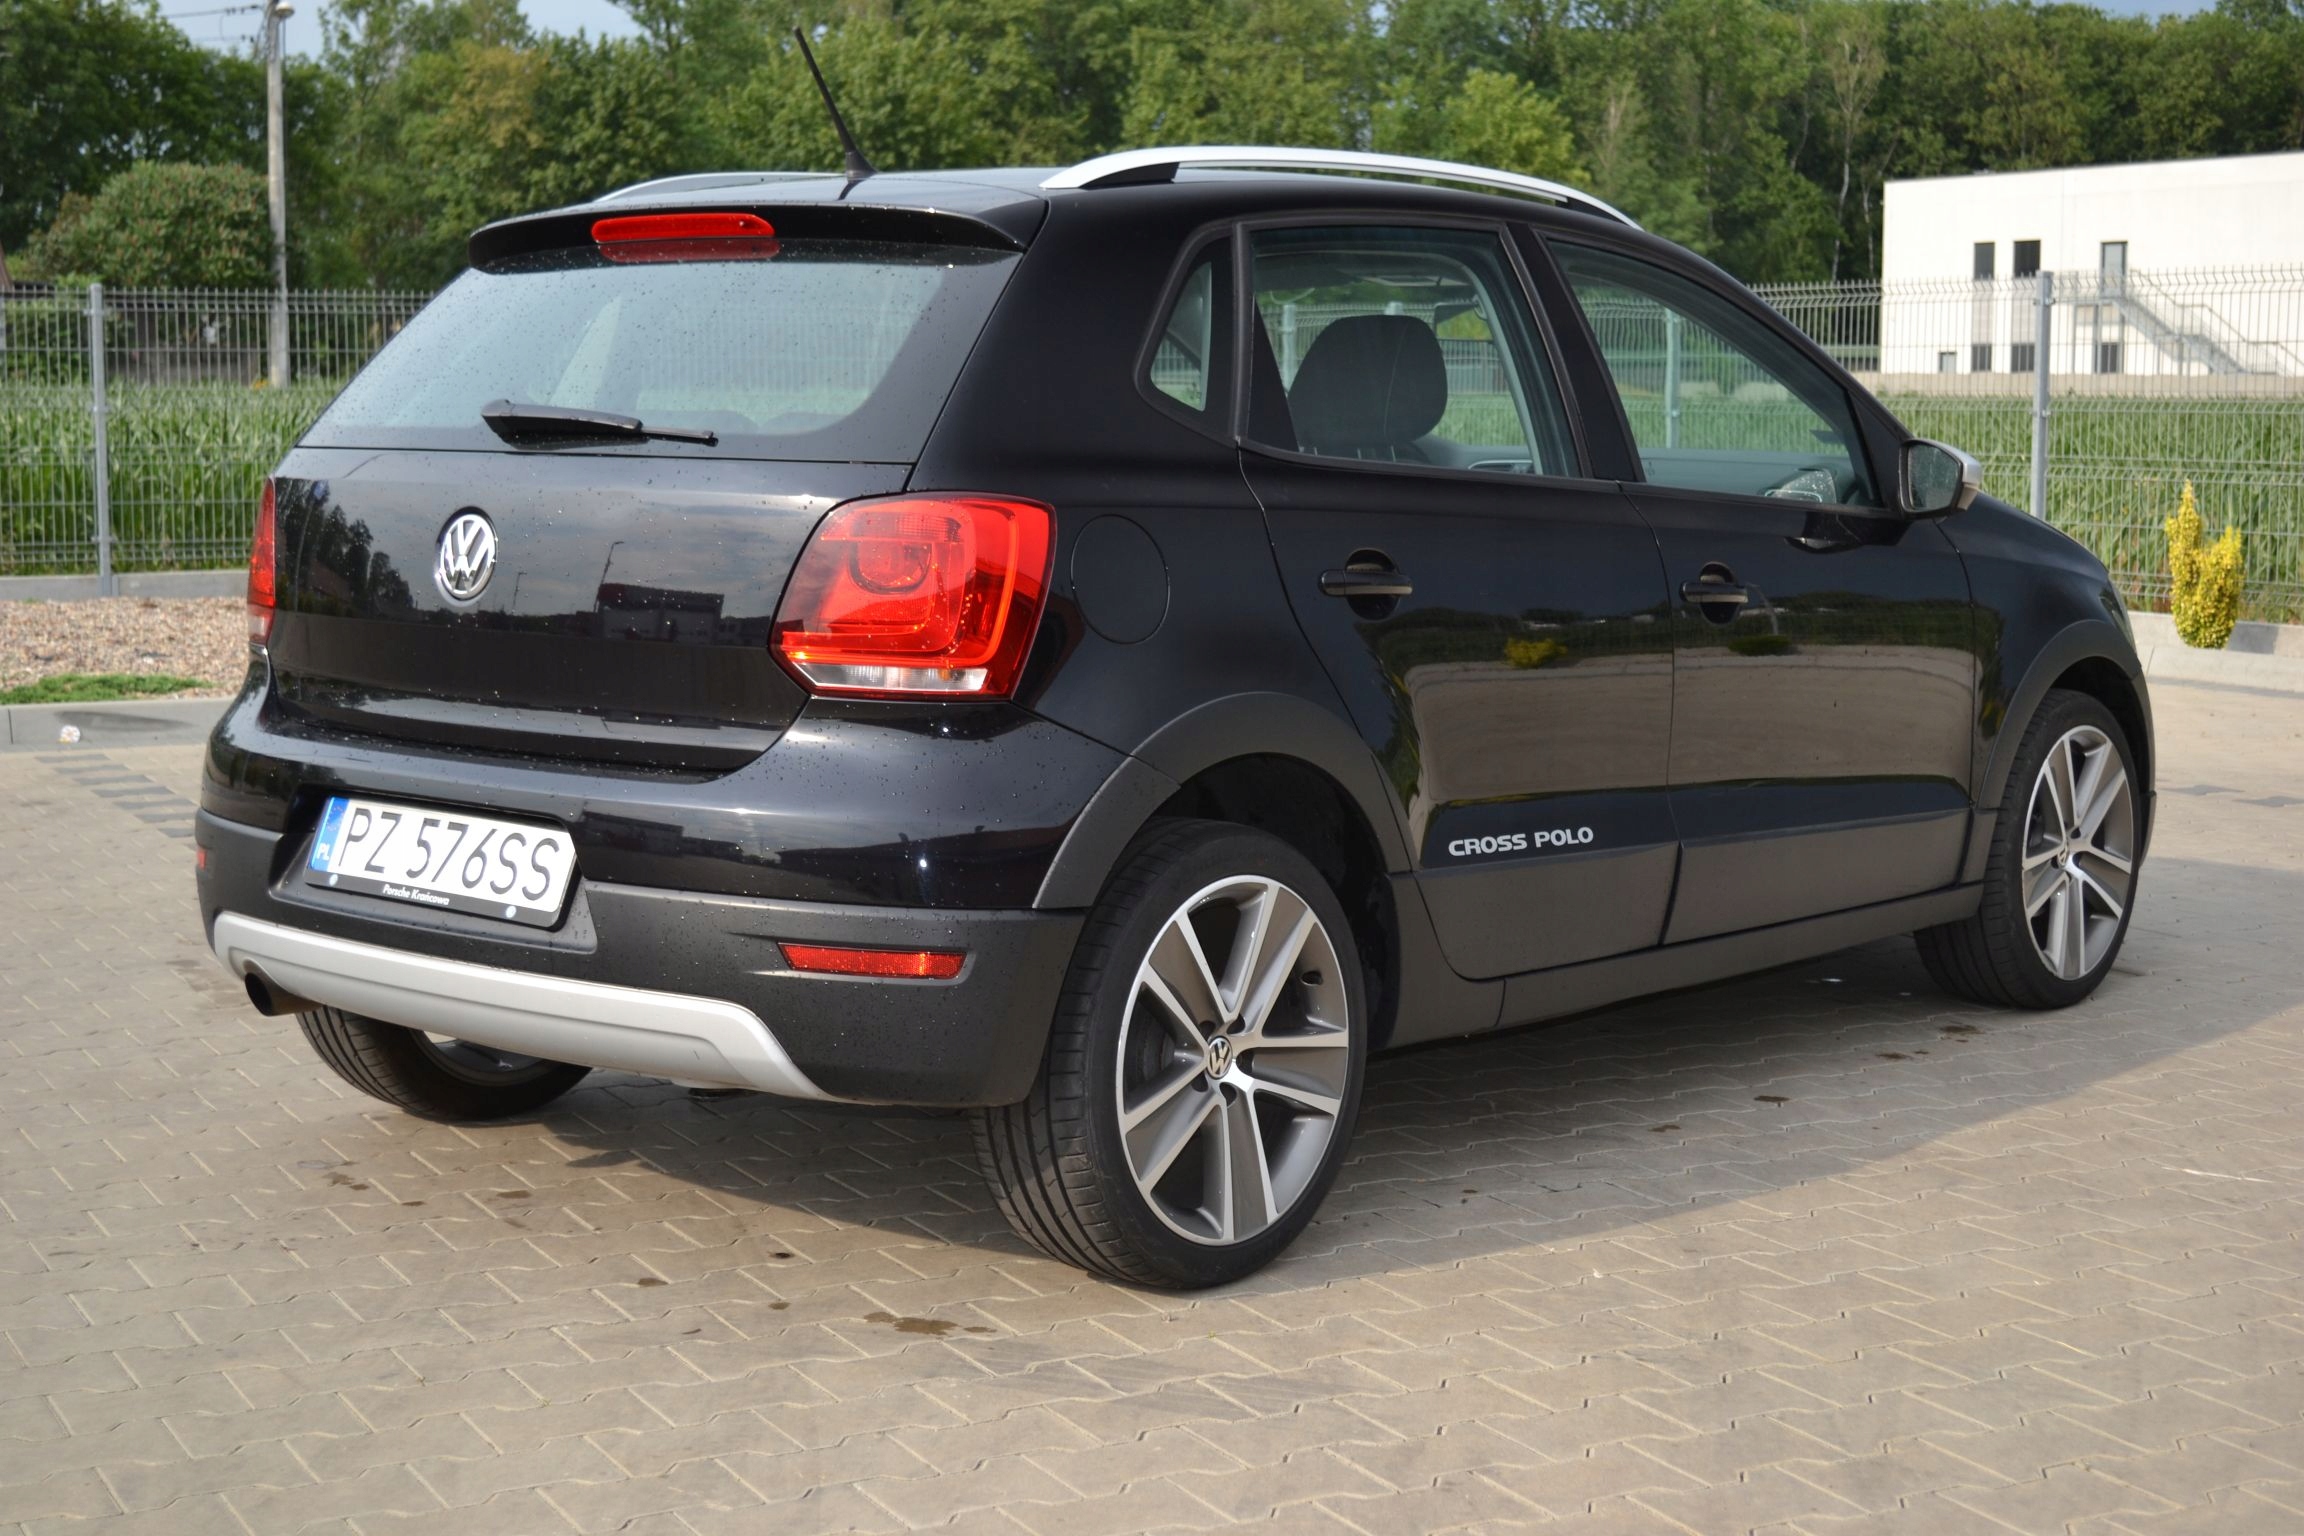 VW Polo Cross 1,4 benzyna 83tyś km klima 17" 8337315950